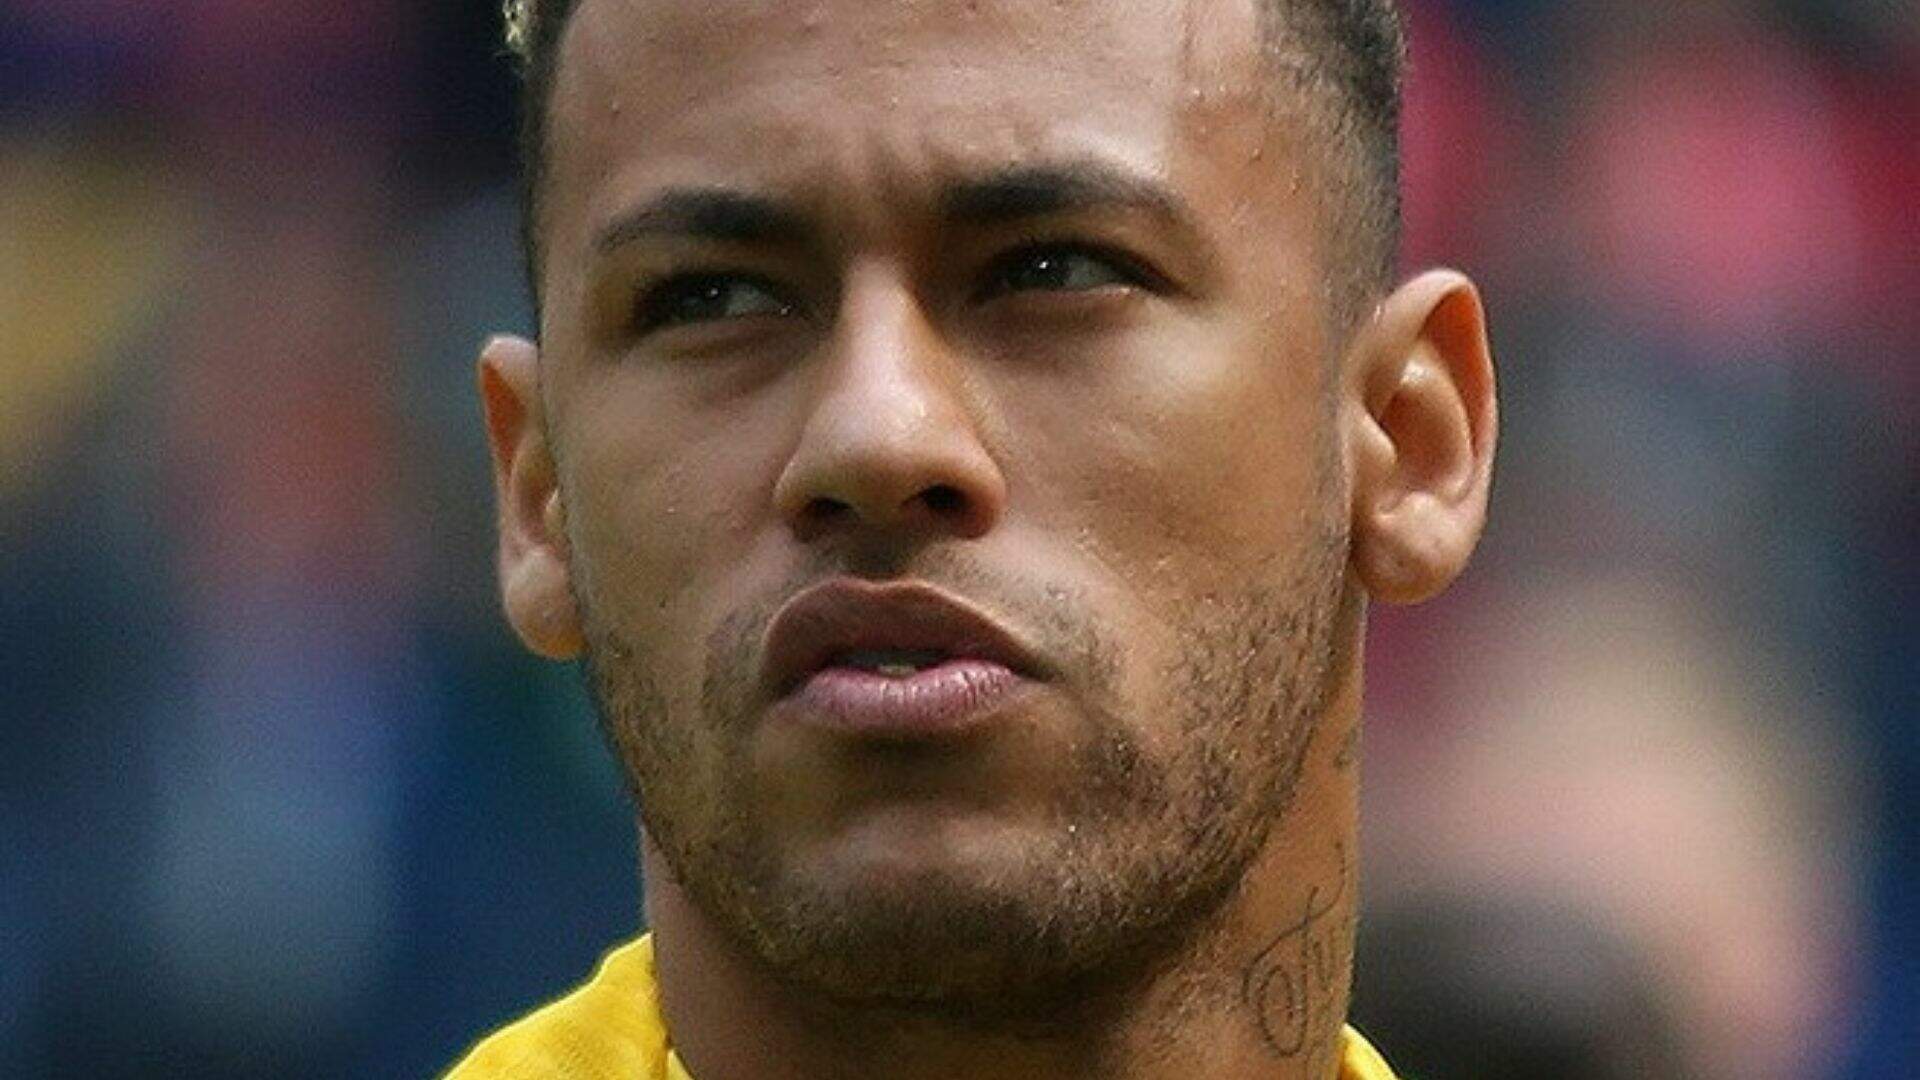 Após diversas acusações de traição, Neymar ironiza: ‘Vai me explanar também?’ - Metropolitana FM